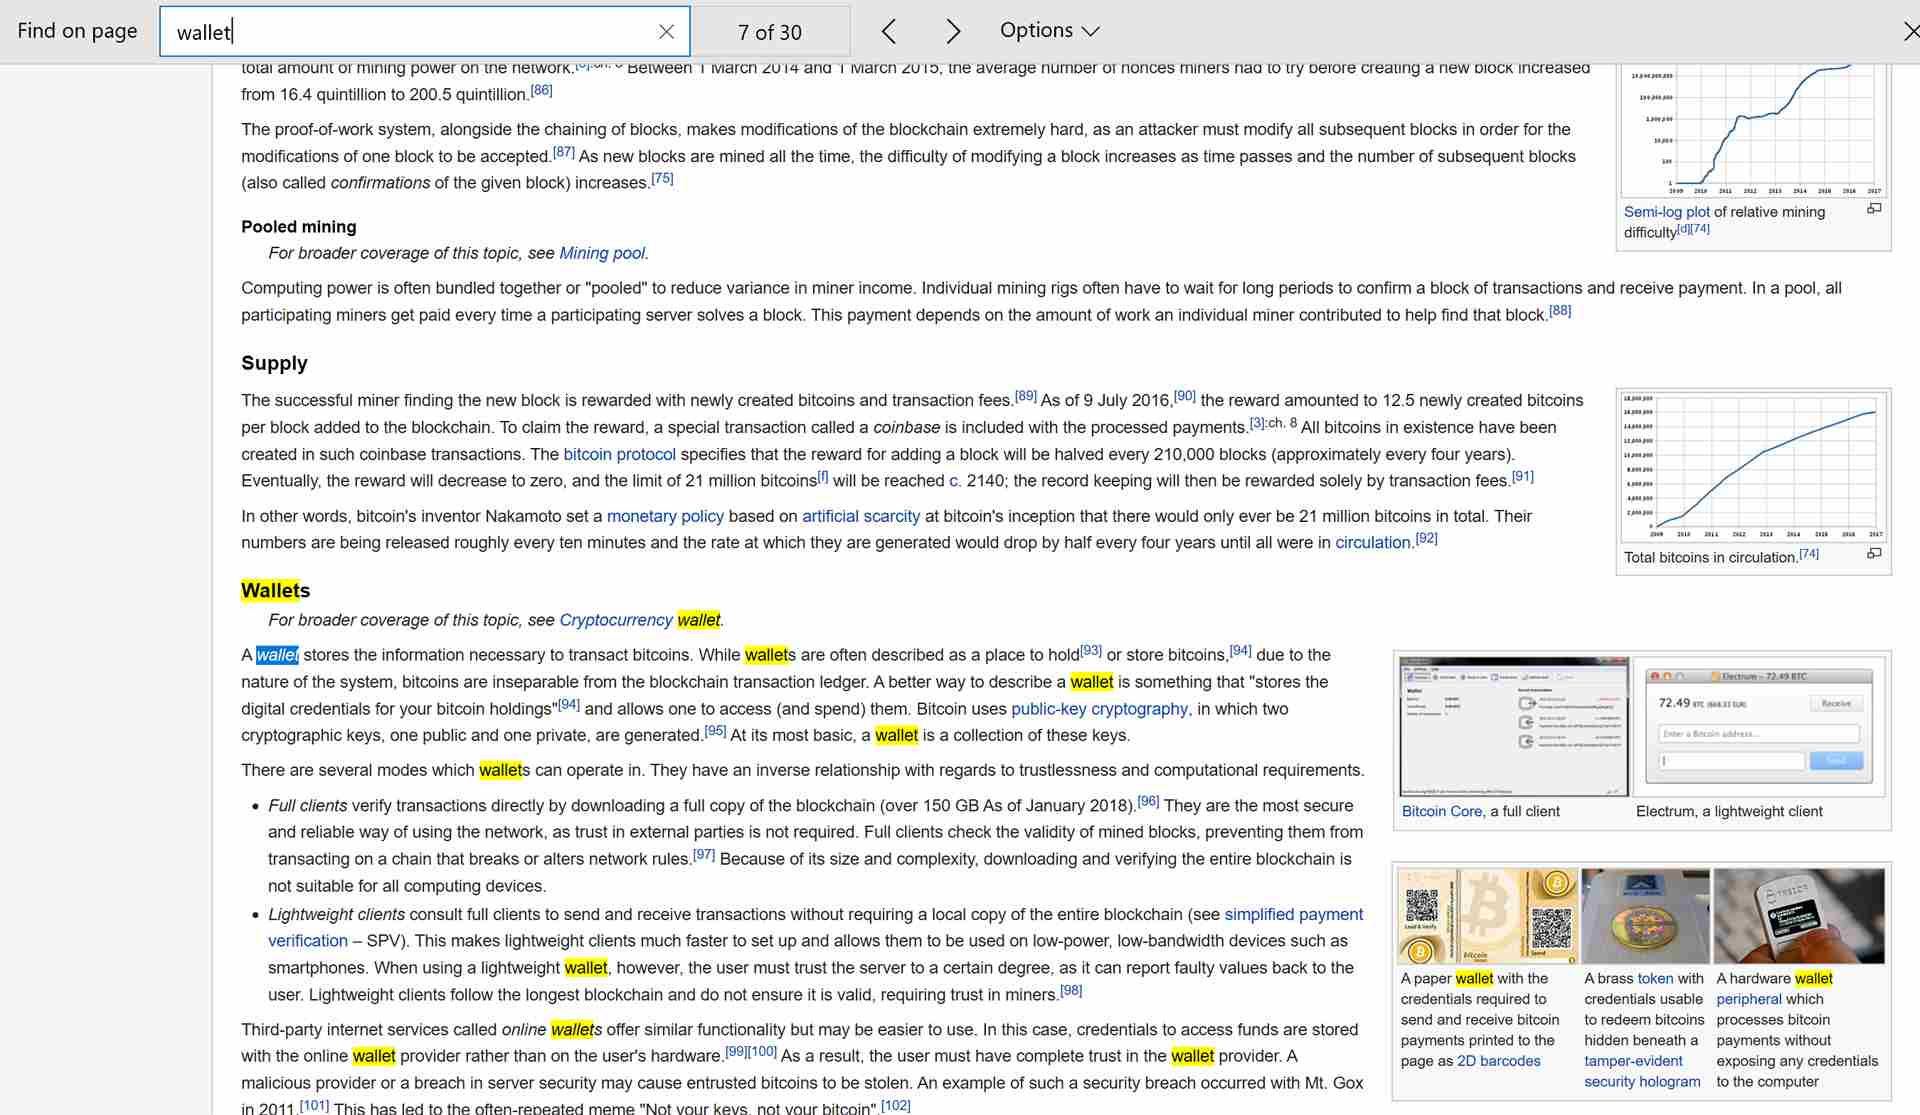 Hae Wikipedia-artikkelista Microsoft Edgessä.